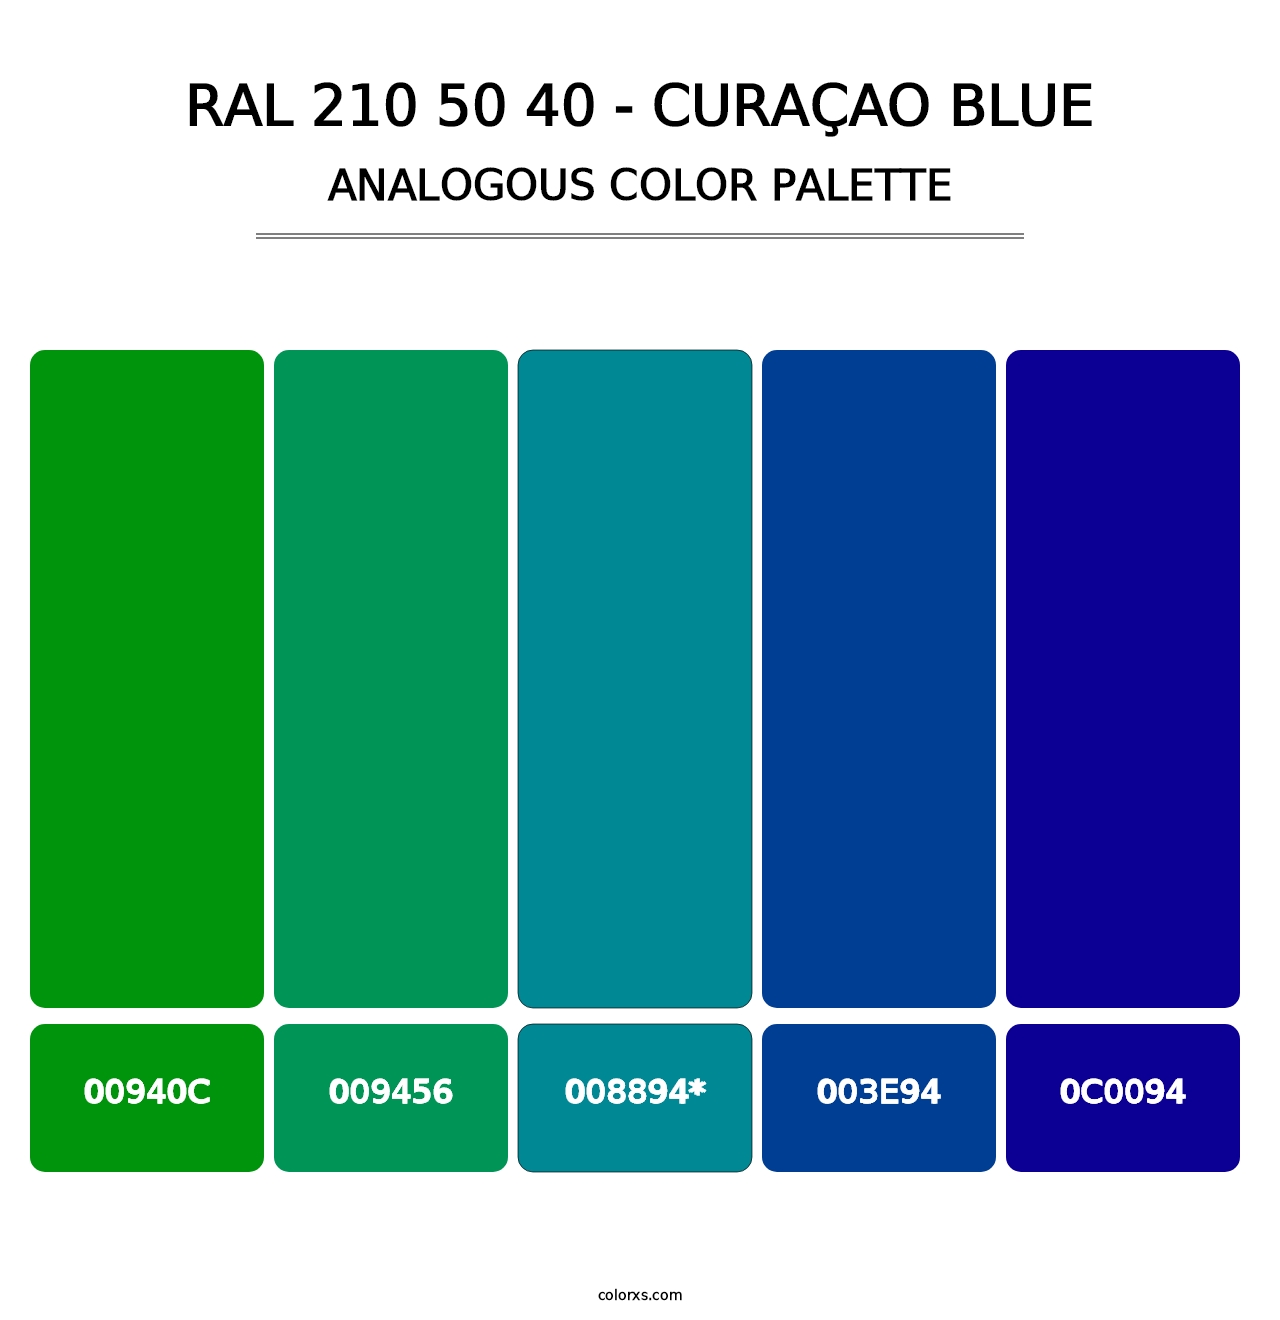 RAL 210 50 40 - Curaçao Blue - Analogous Color Palette